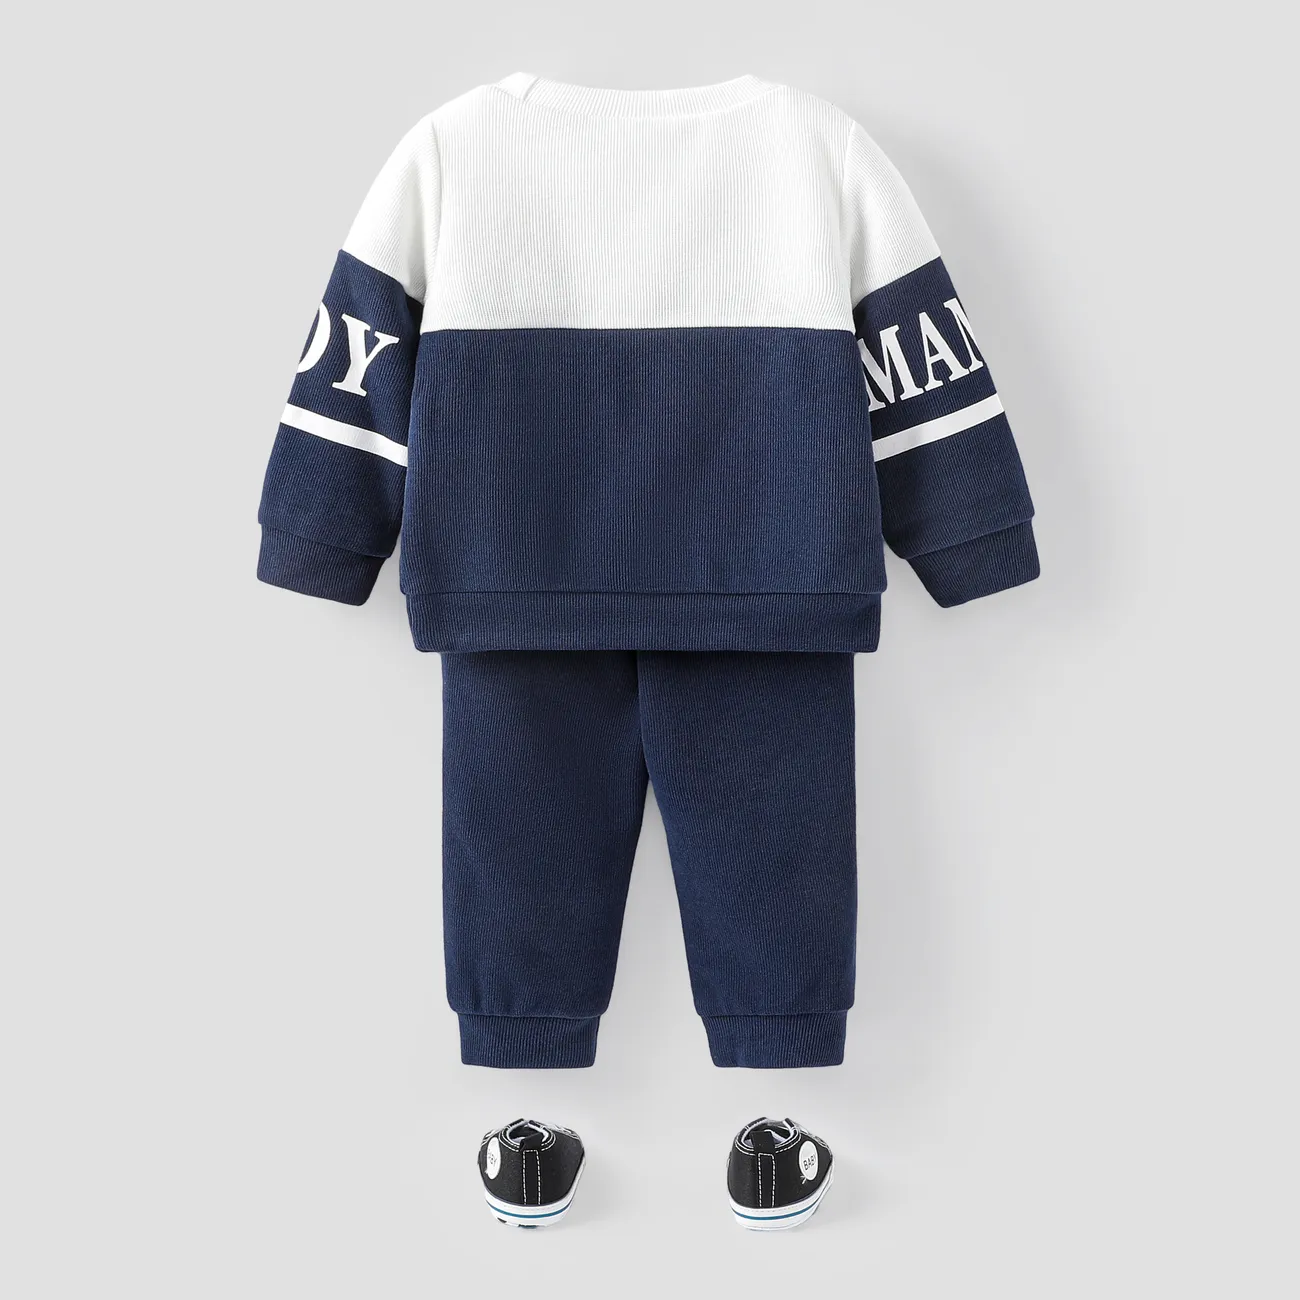 2 unidades Bebé Menino Costuras de tecido Casual Manga comprida Conjunto para bebé Azul Escuro / Branco big image 1